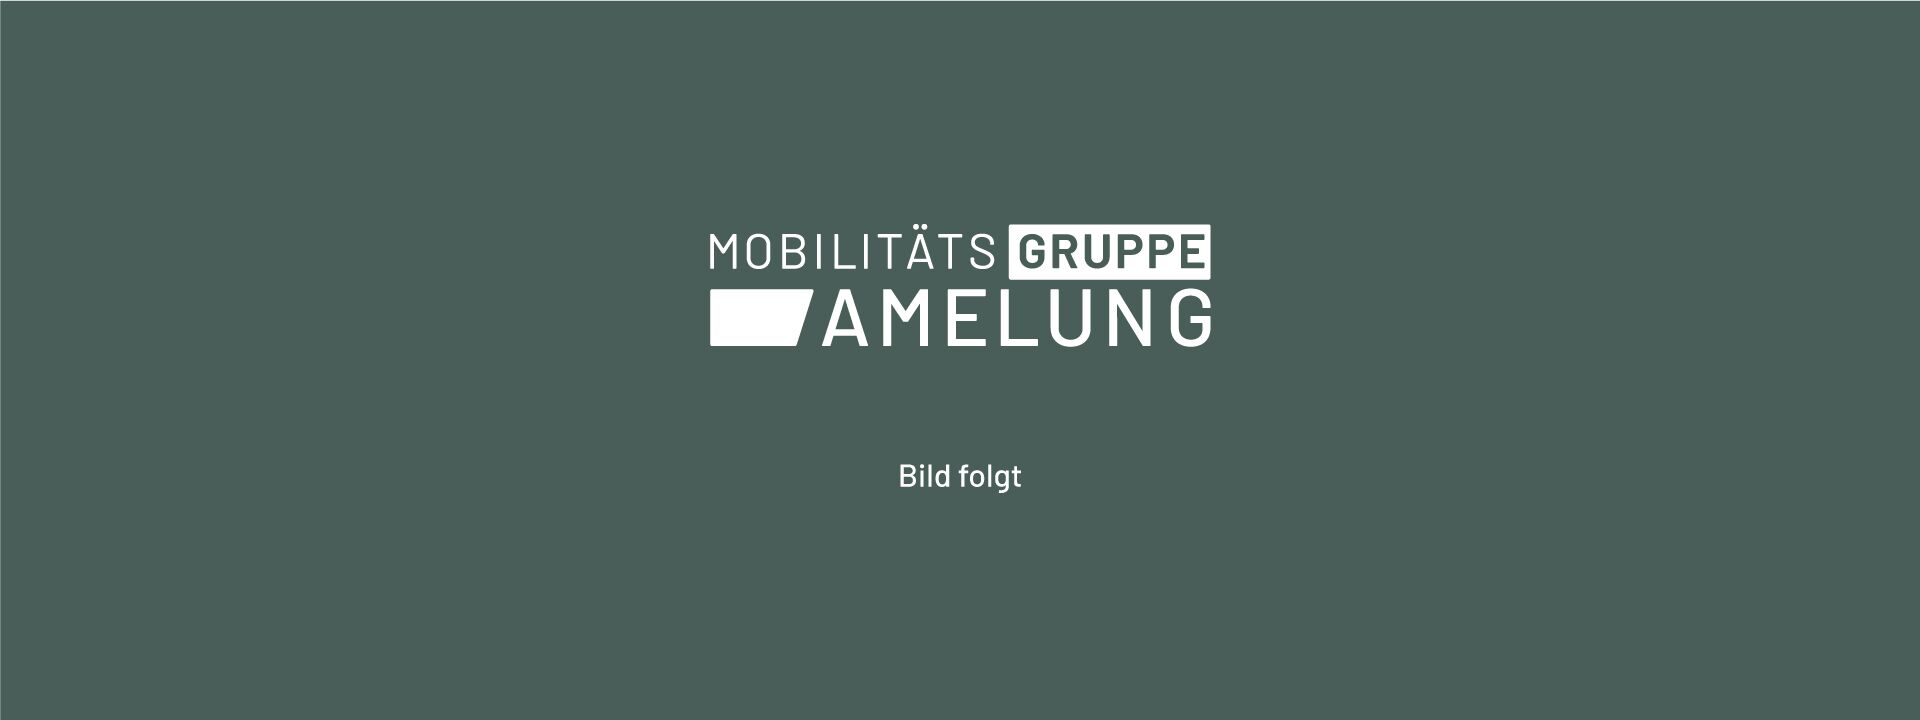 Groß- & Sonderkunden ANDAMO Holding GmbH & Co. KG